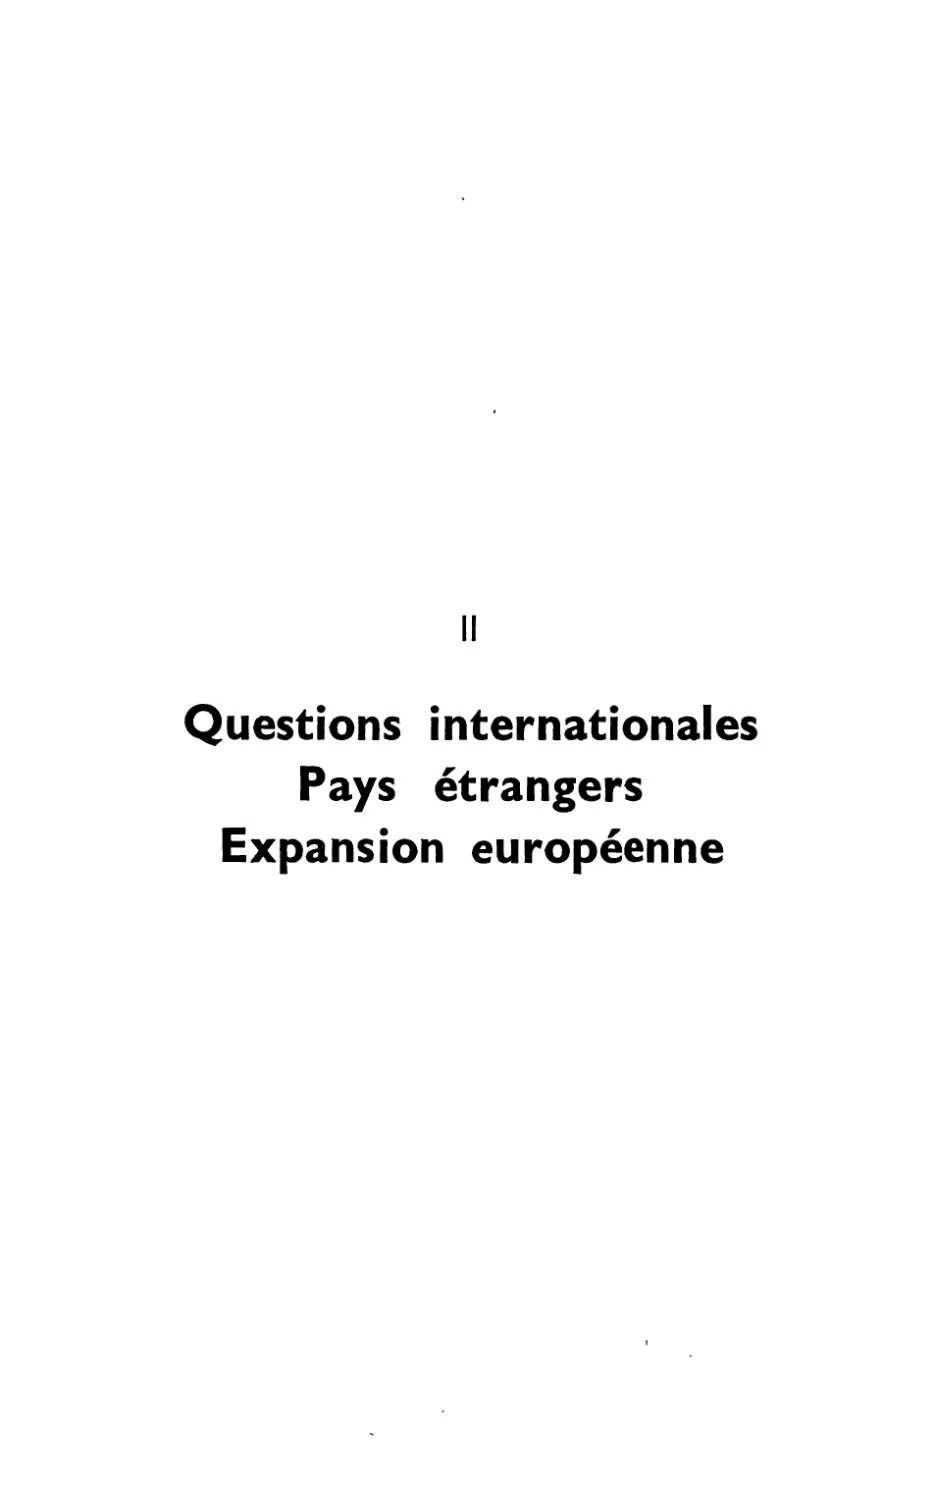 QUESTIONS INTERNATIONALES. PAYS ÉTRANGERS. EXPANSION EUROPÉENNE